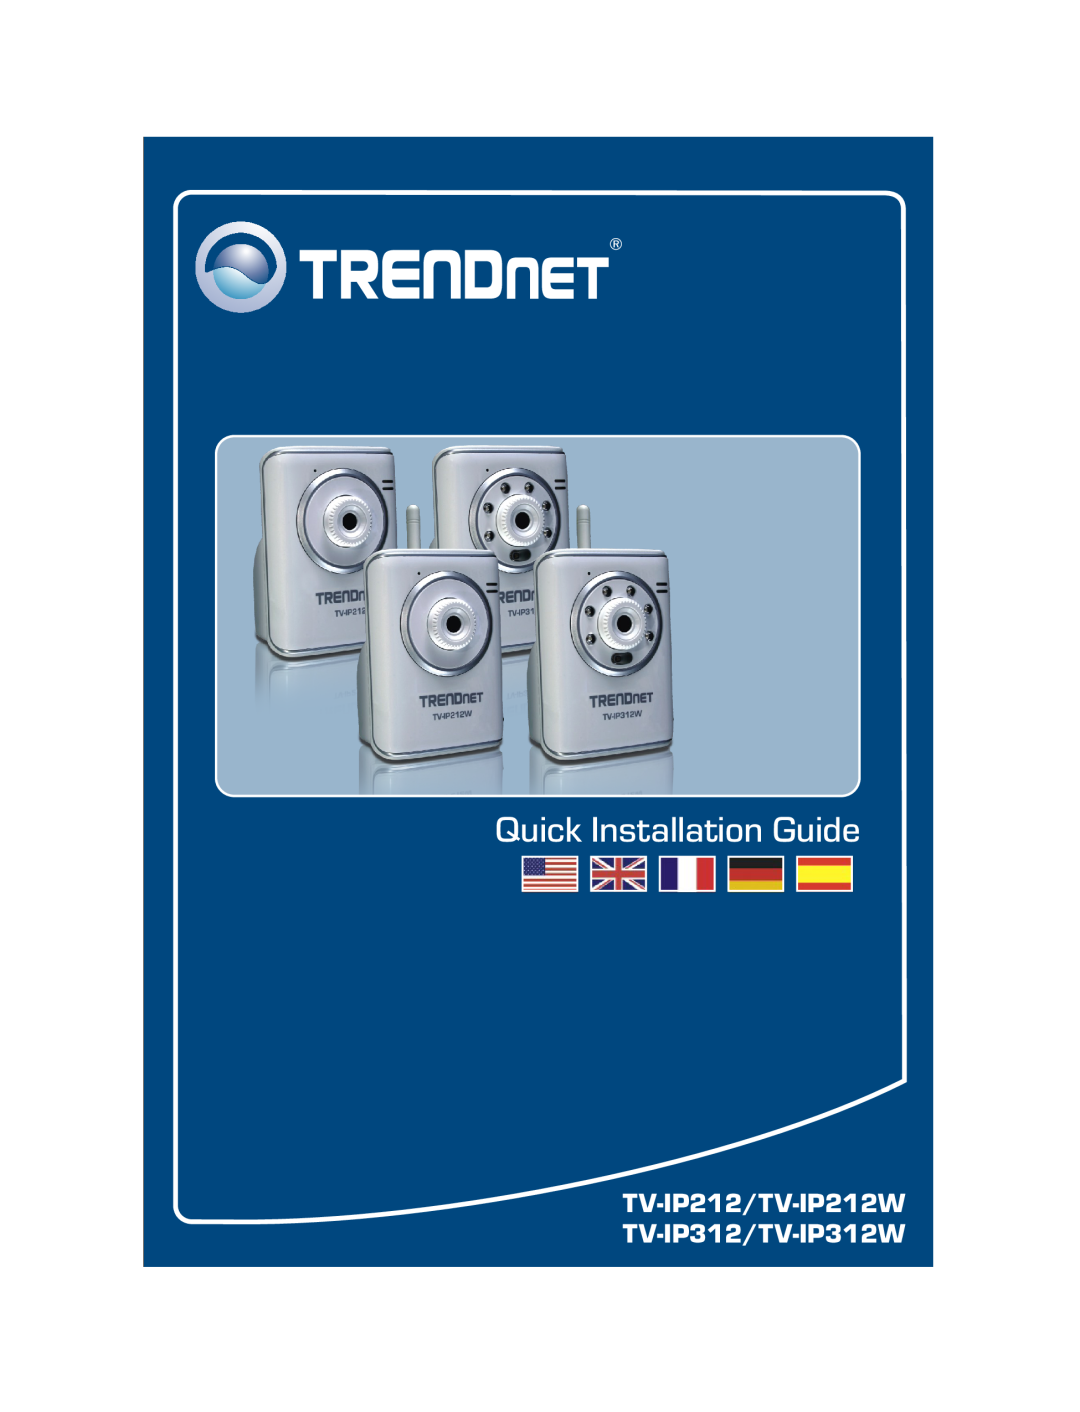 TRENDnet TK-802R, TRENDNET manual Quick Installation Guide 